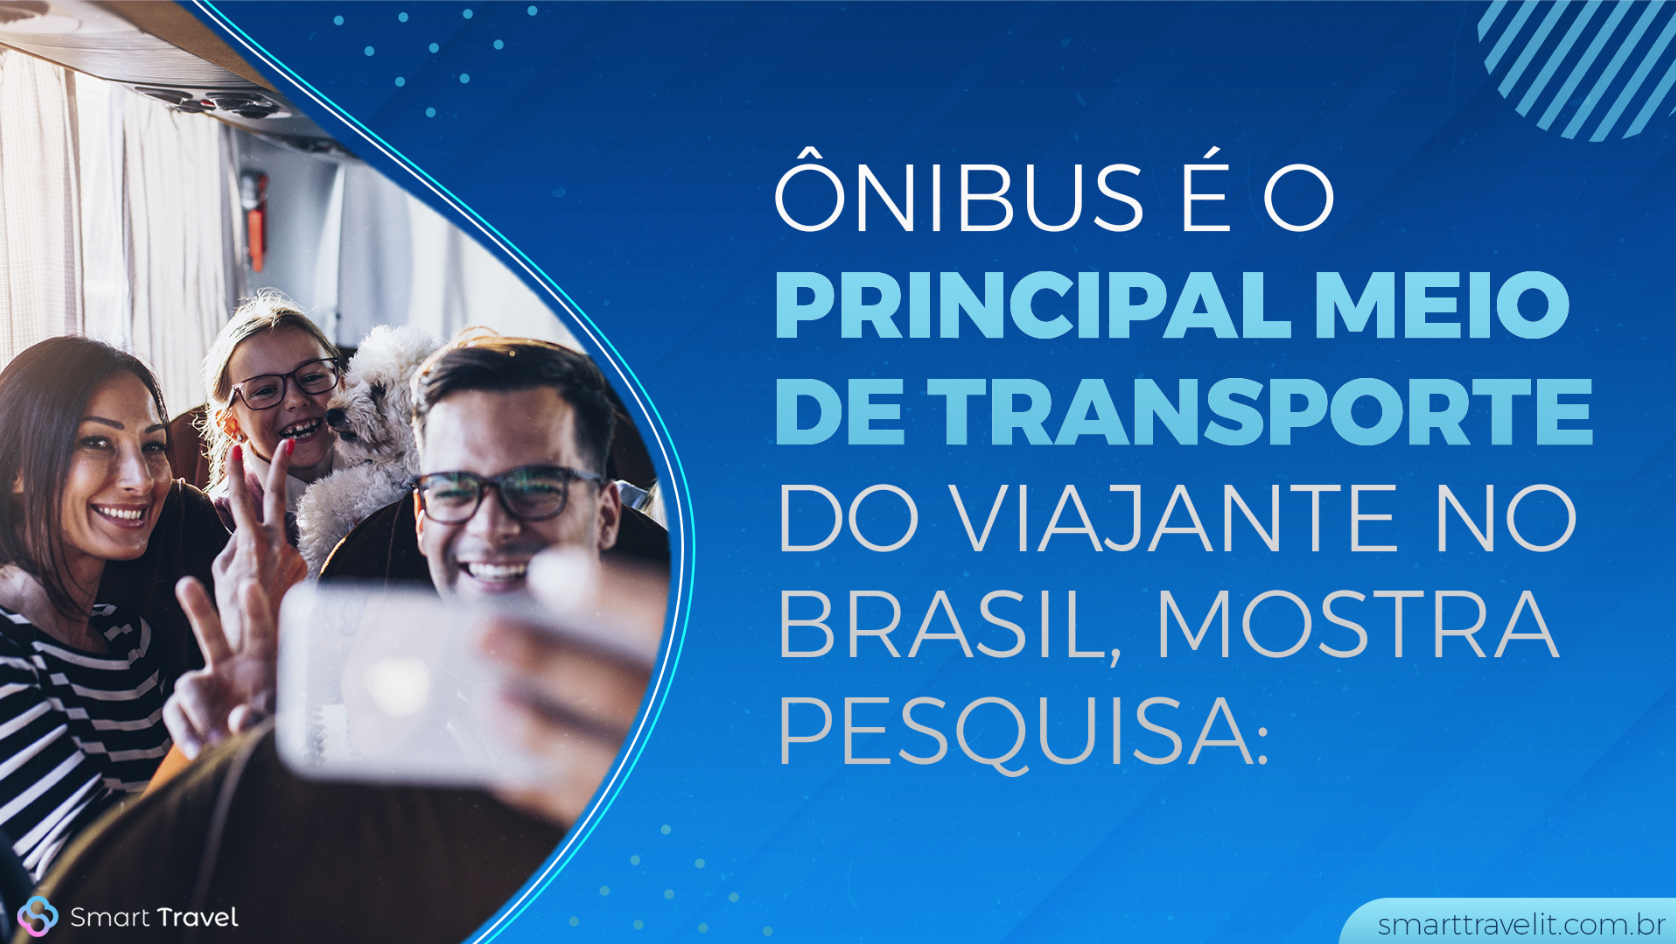 Oníbuls é o principal meio de transporte do viajante brasileiro